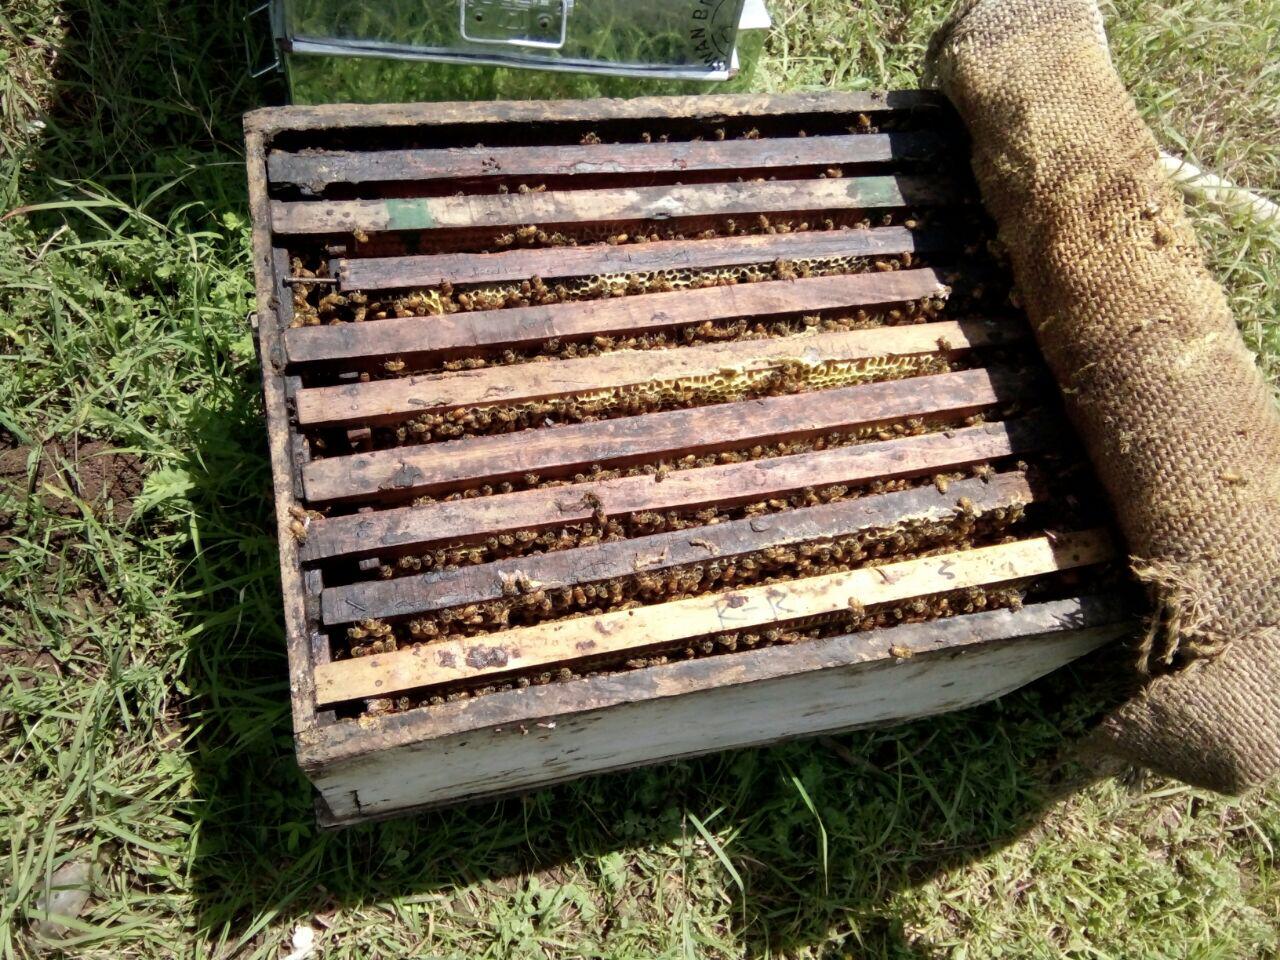 bee-hive